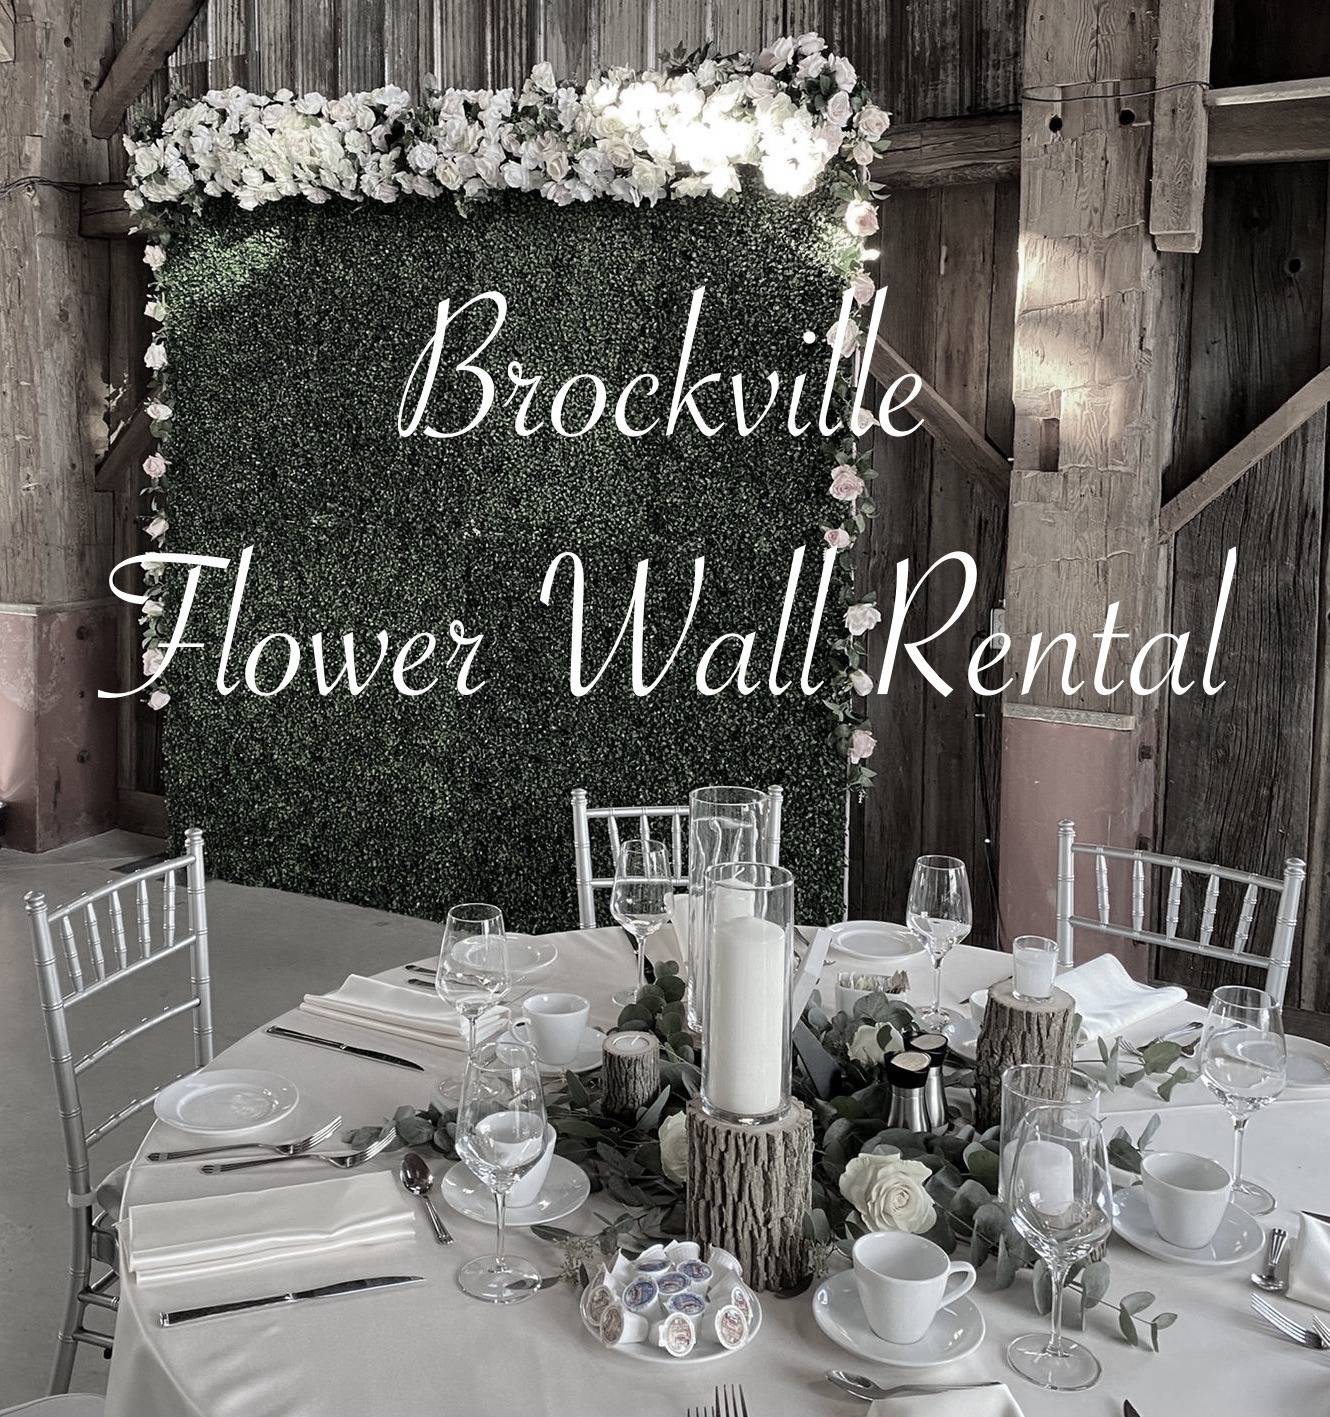 Brockville flower wall rental